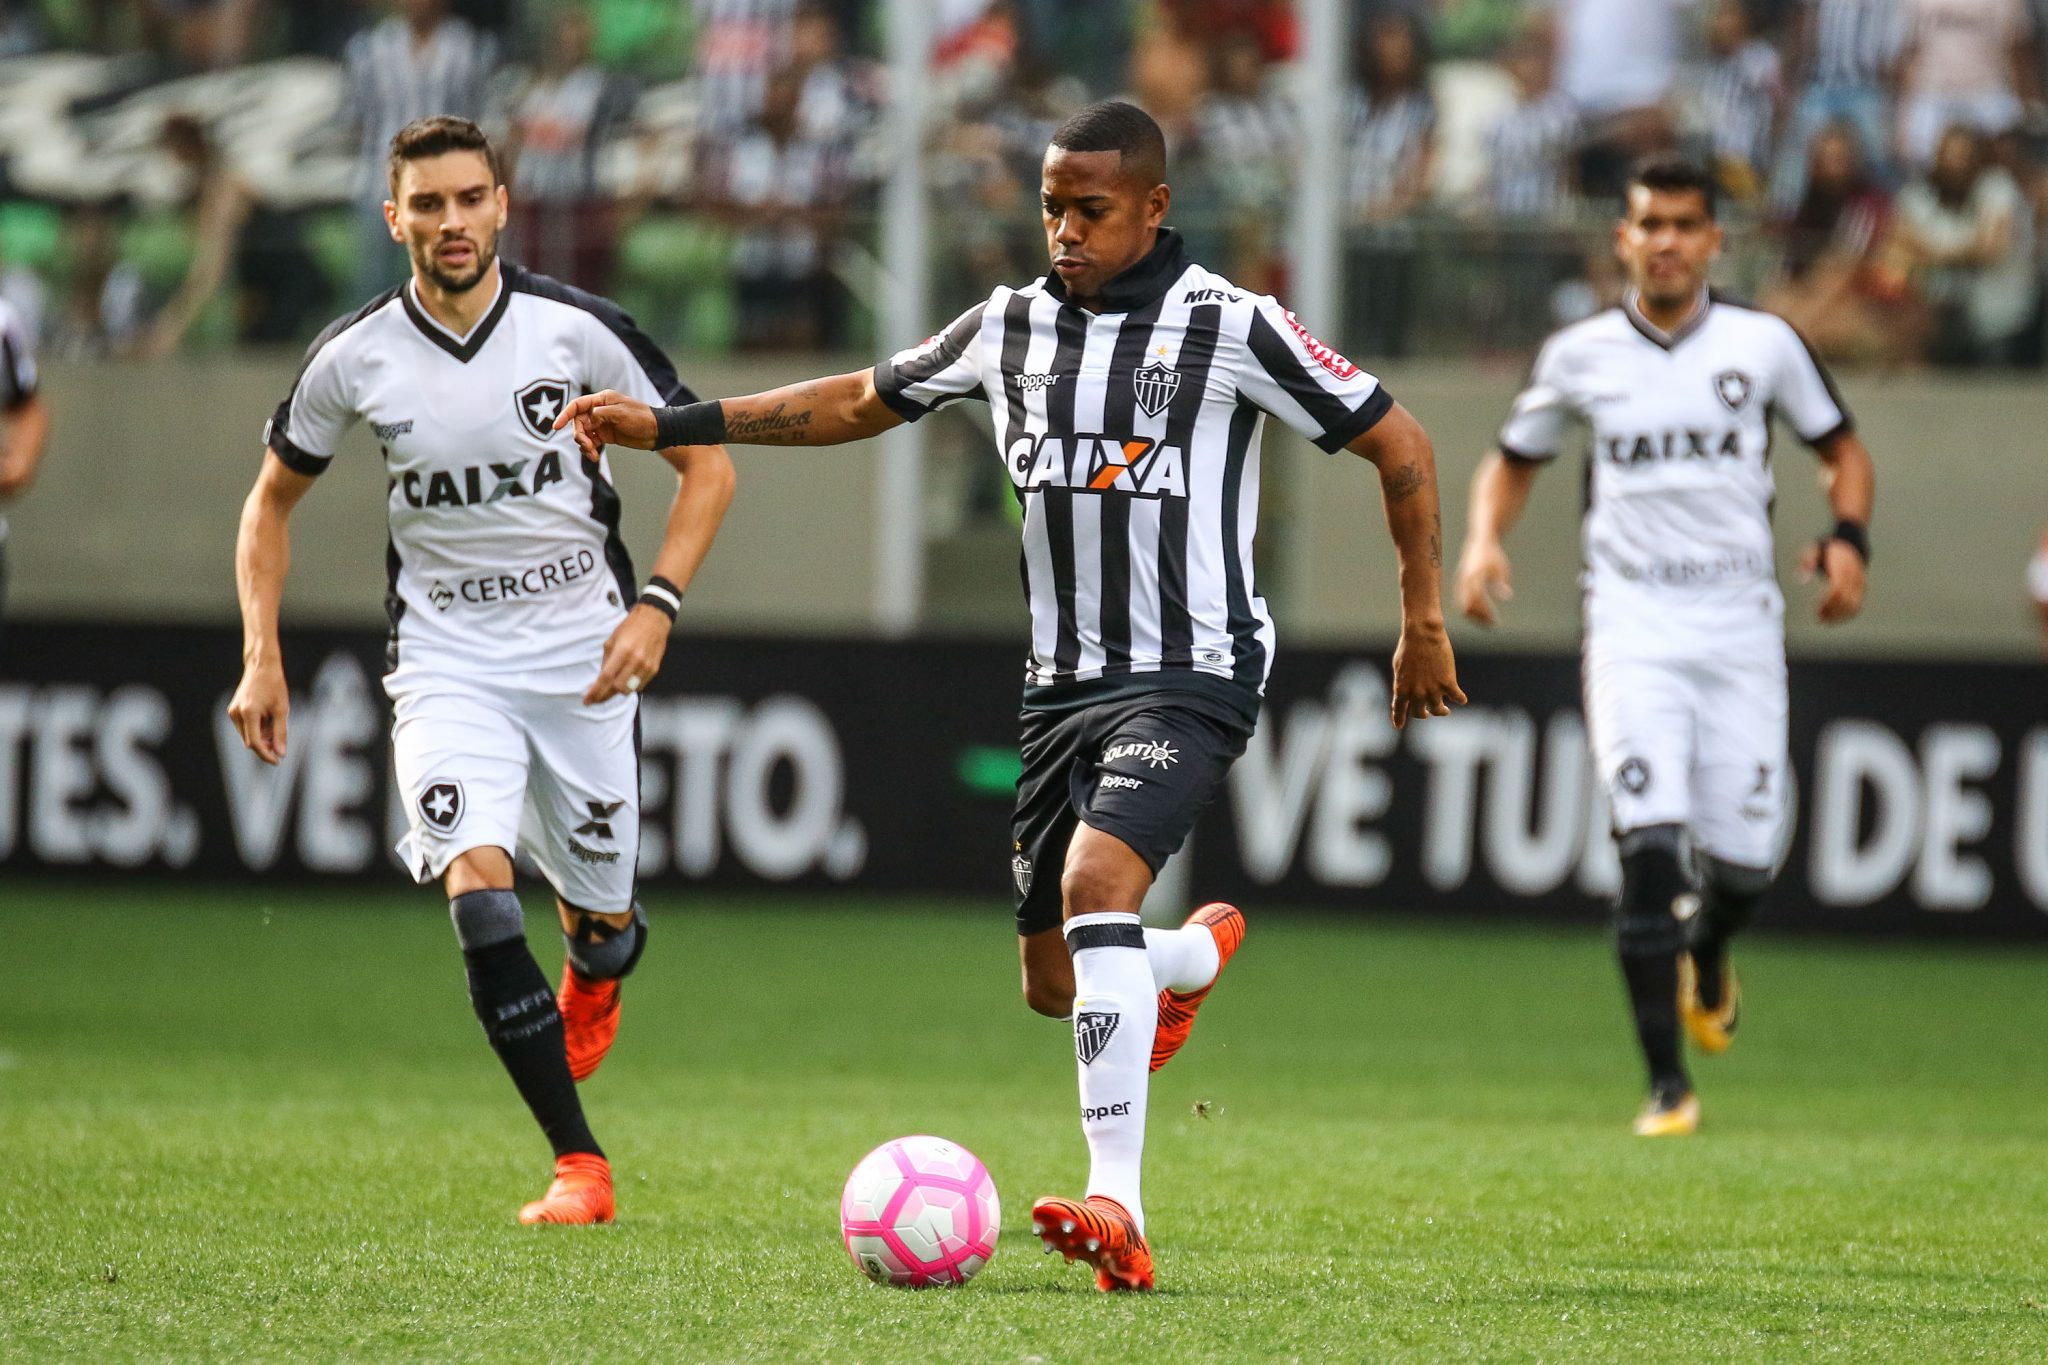 37989683852 ab3478161d o - Atlético 0 x 0 Botafogo - Galo tenta, mas esbarra na falta de inspiração e só empata no Horto